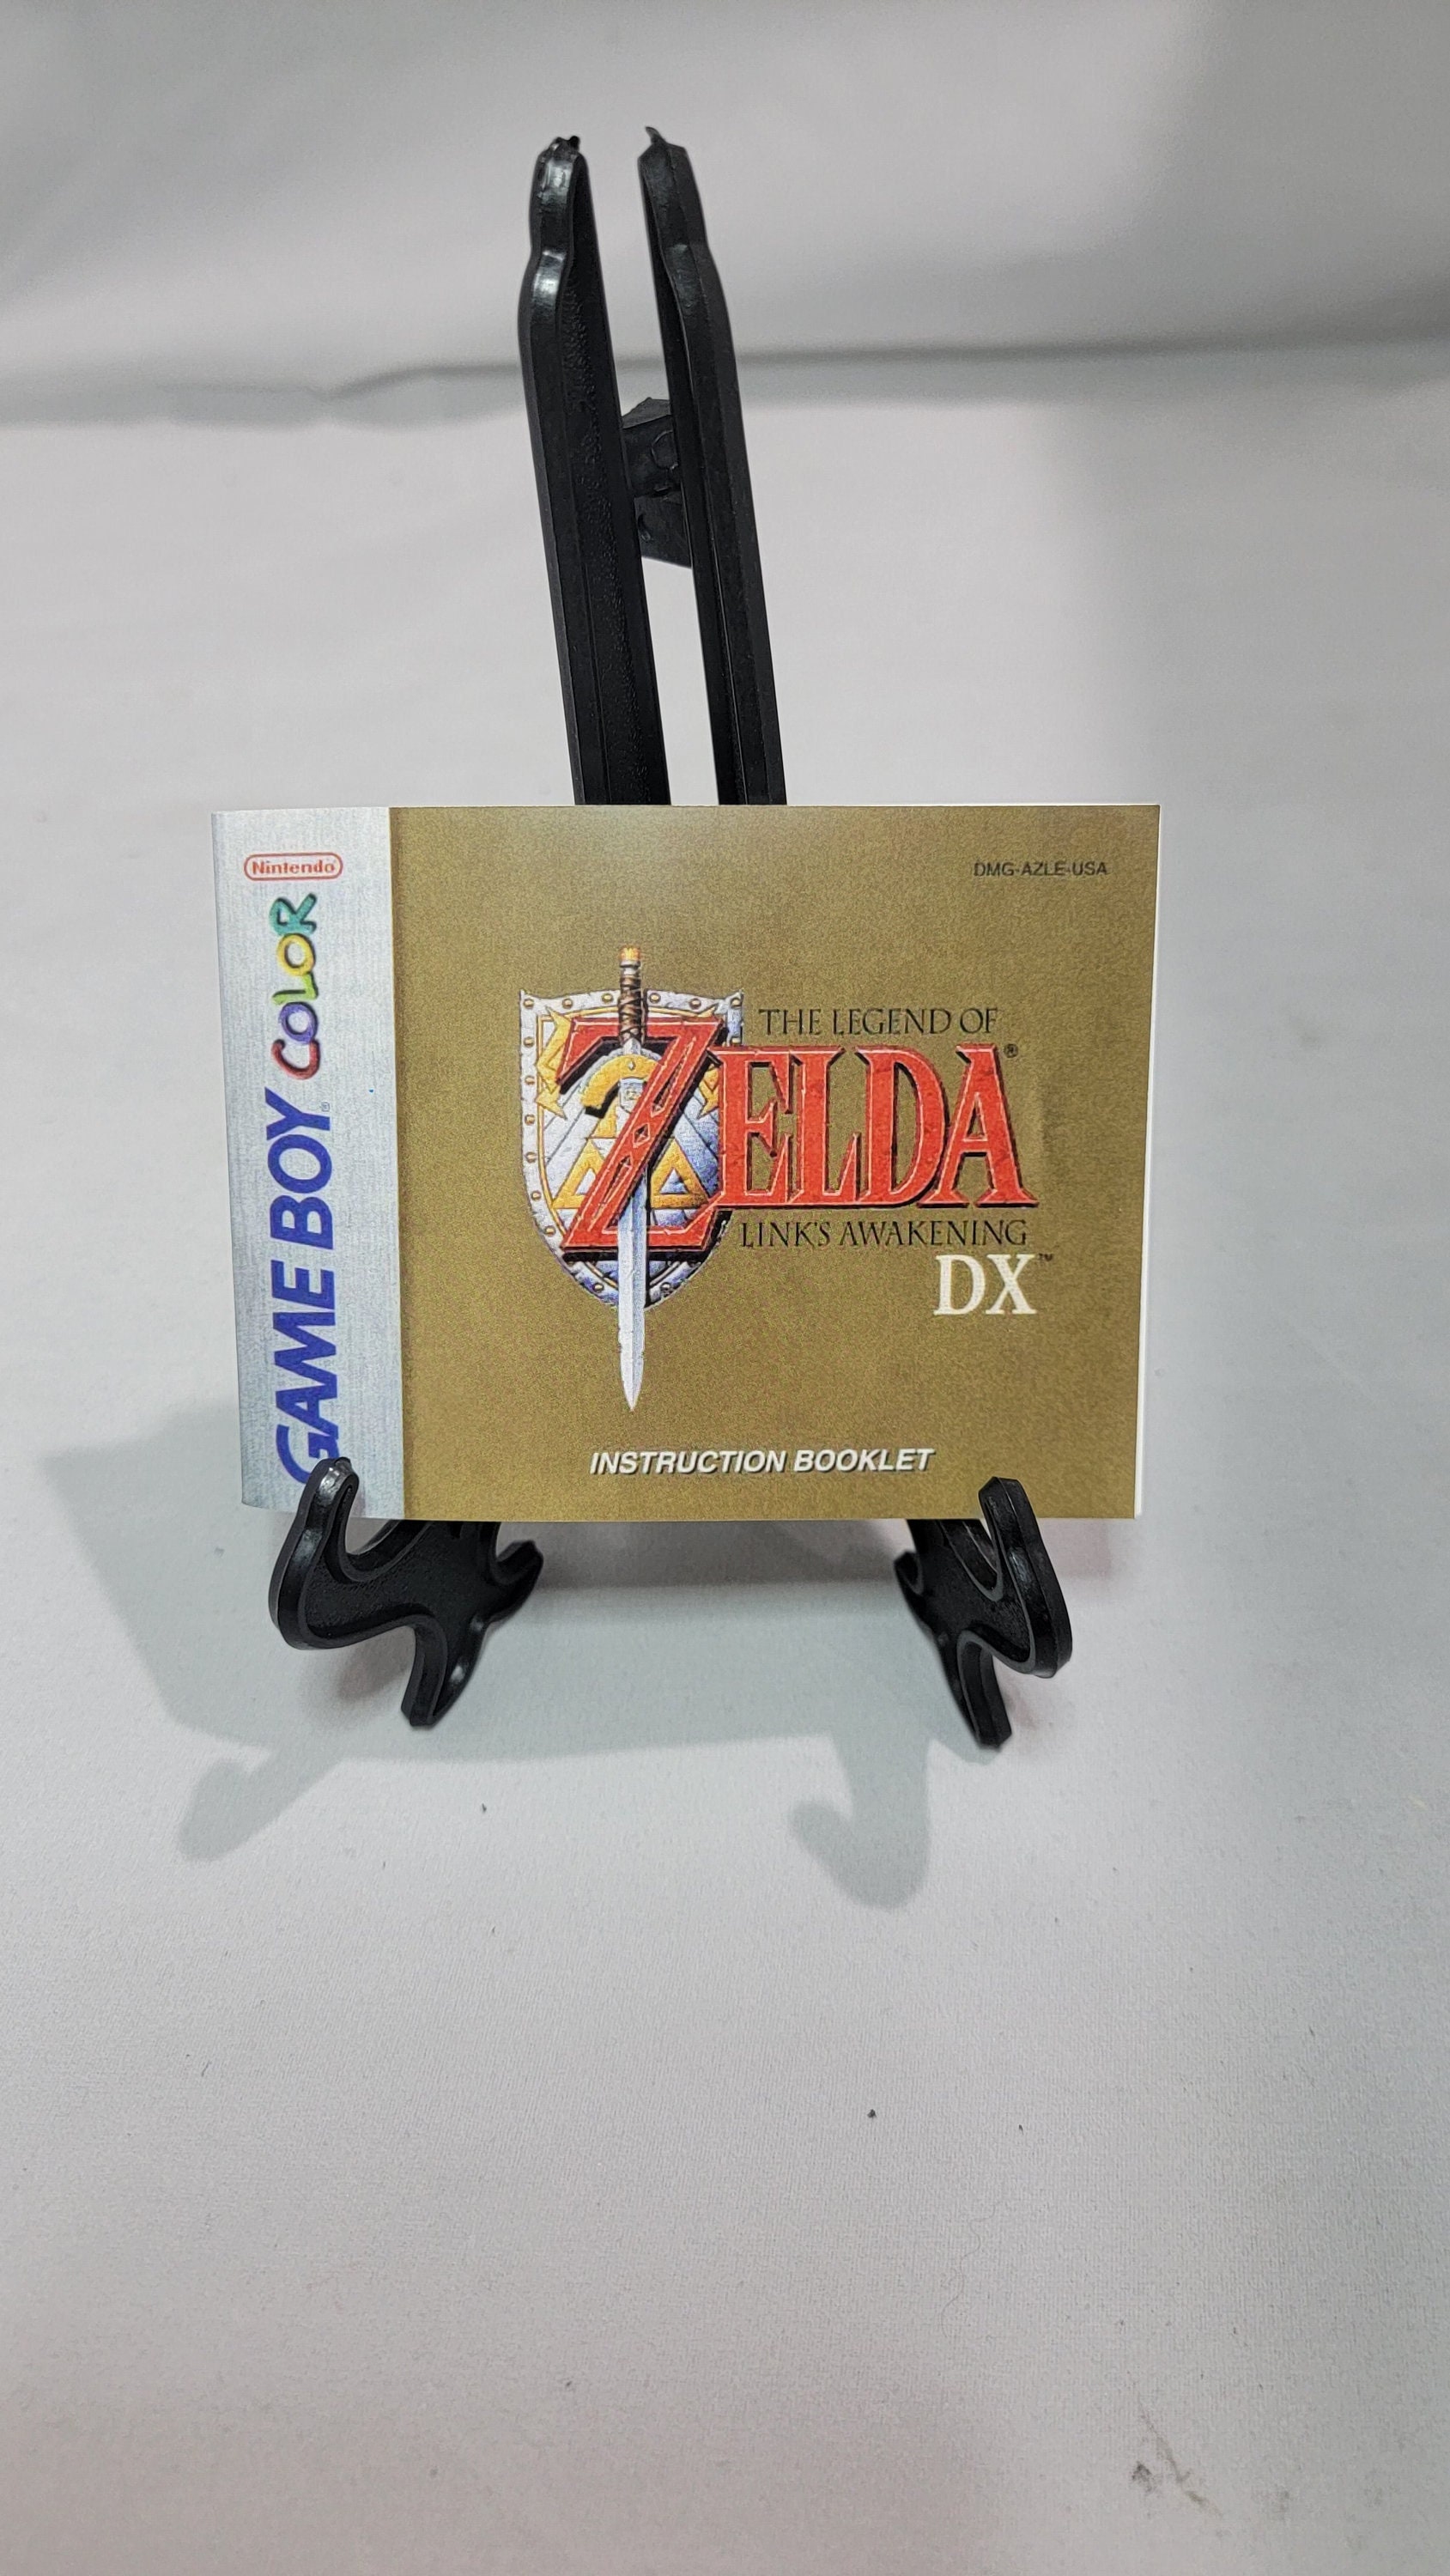 The Legend of Zelda Link's awakening DX Game boy color